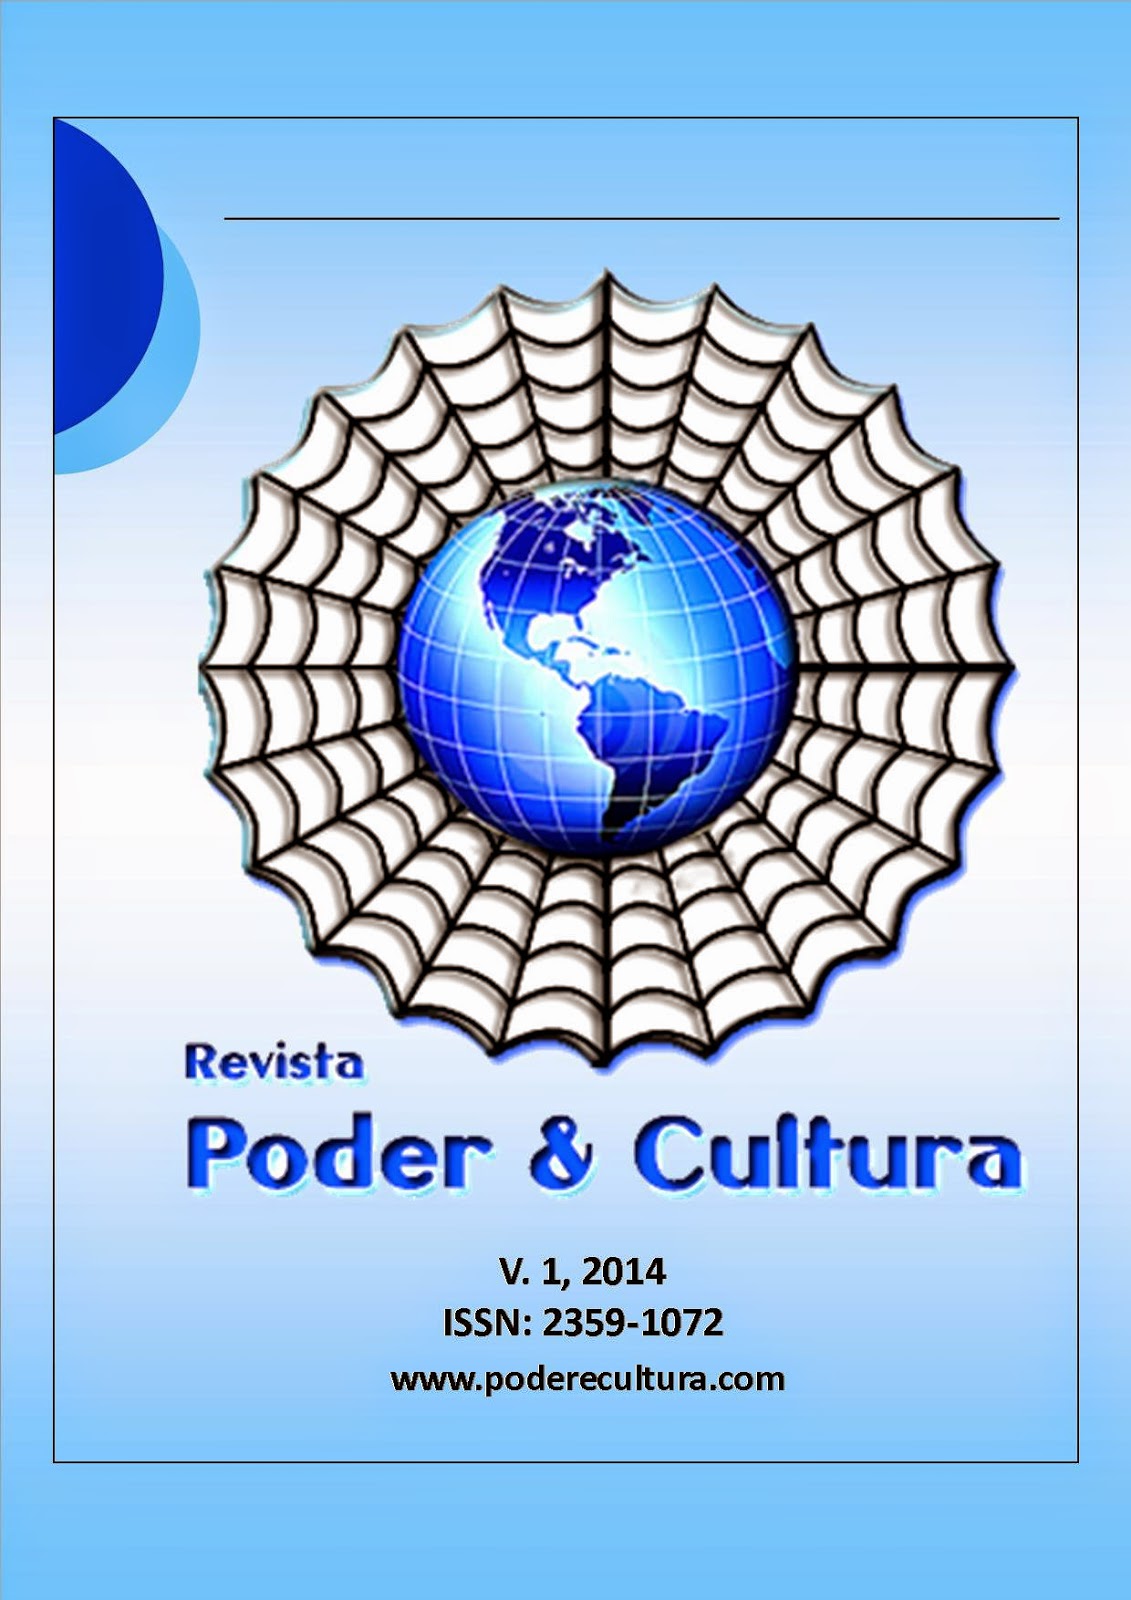 Revista Poder & Cultura V.3 N.6 by Poder e Cultura - Issuu